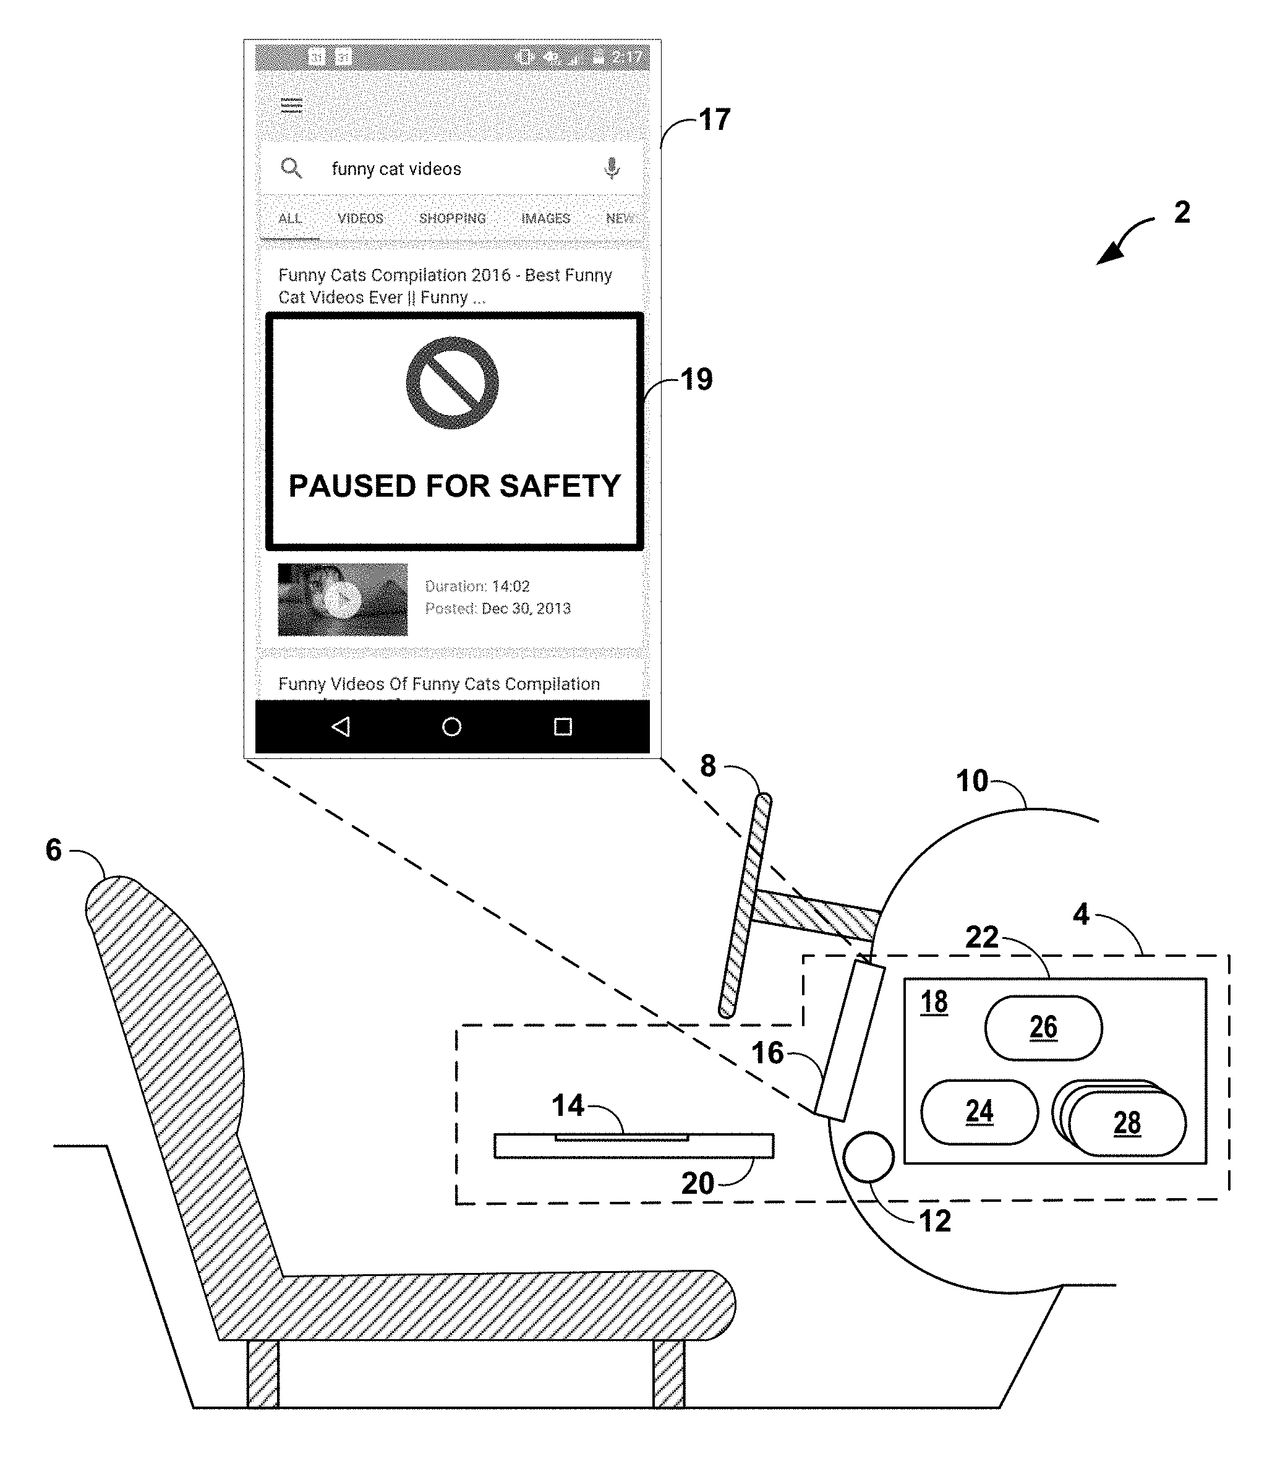 Prototyp powiadomienia o zablokowaniu smartfona, fot. Google Patents.